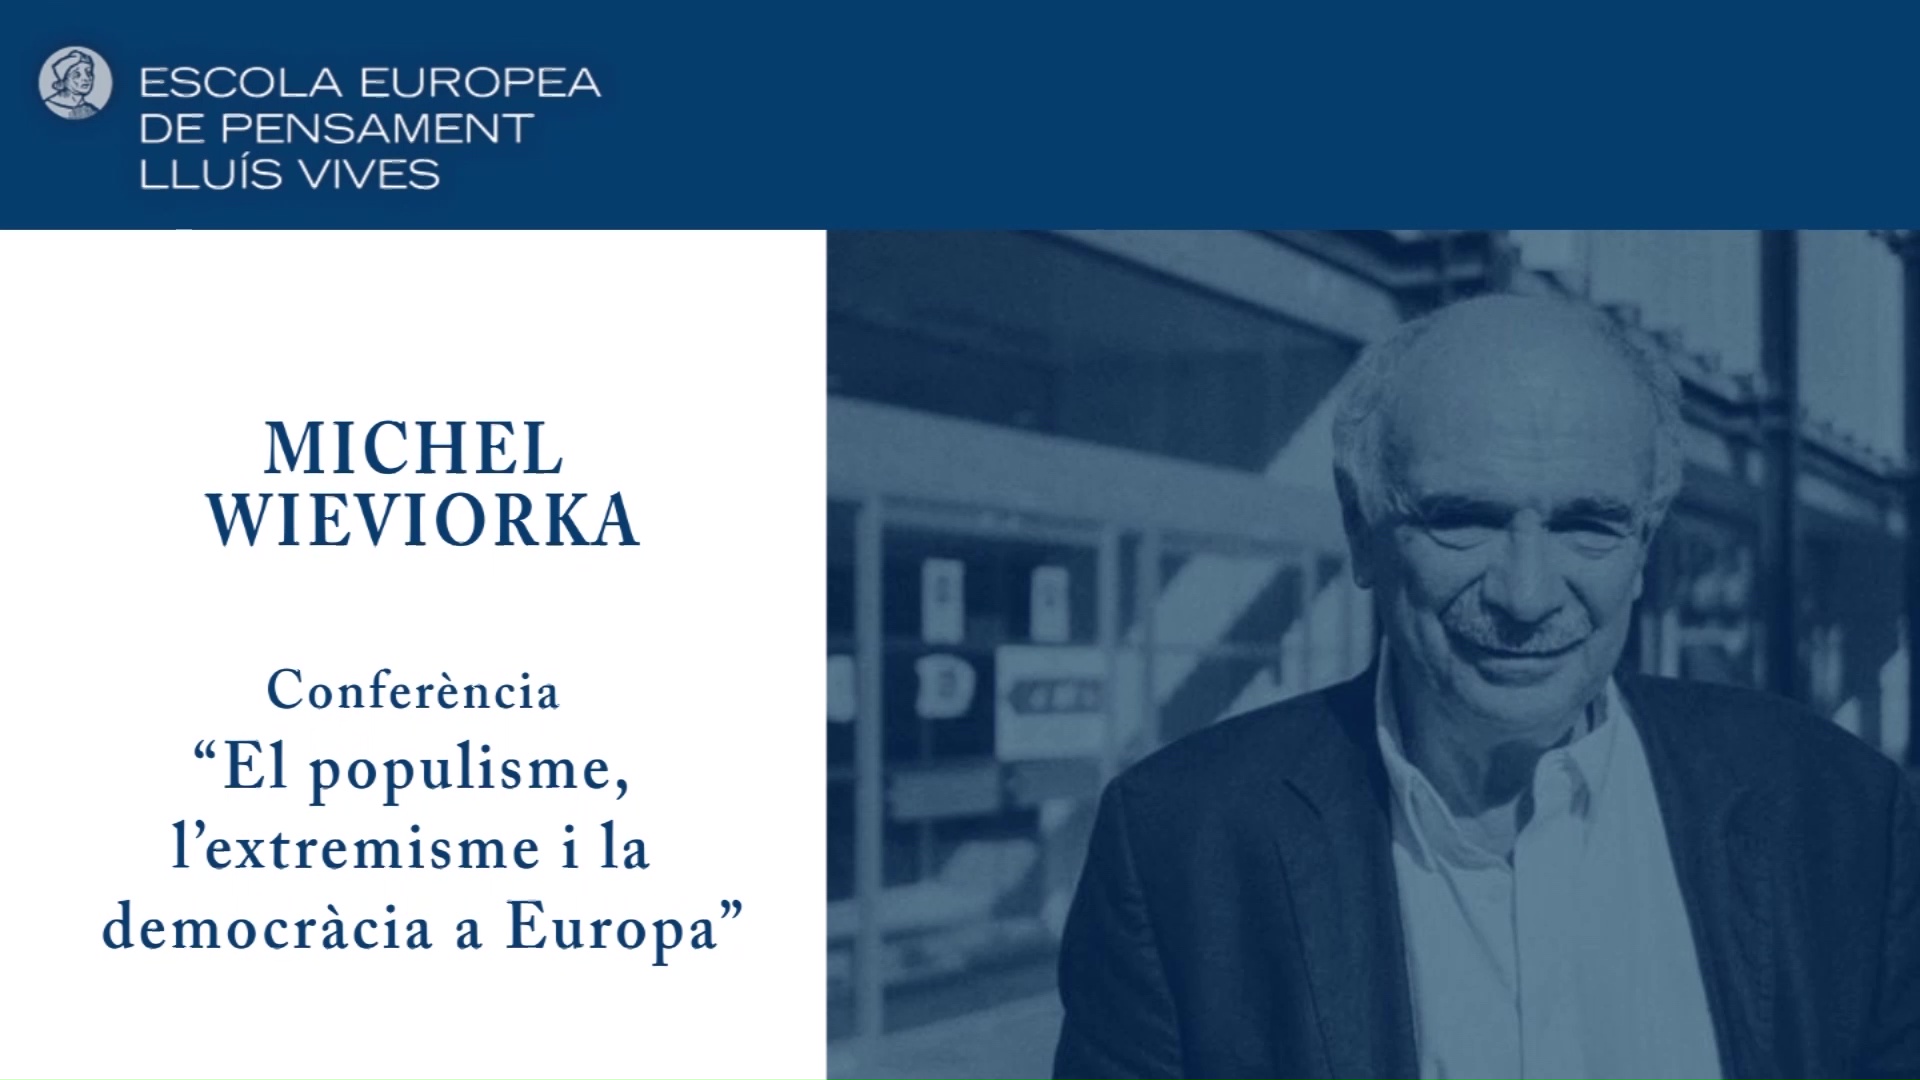 Imatge de la portada del video;Conferència 'El populisme, l’extremisme i la democràcia a Europa' a càrrec de Michel Wieviorka.